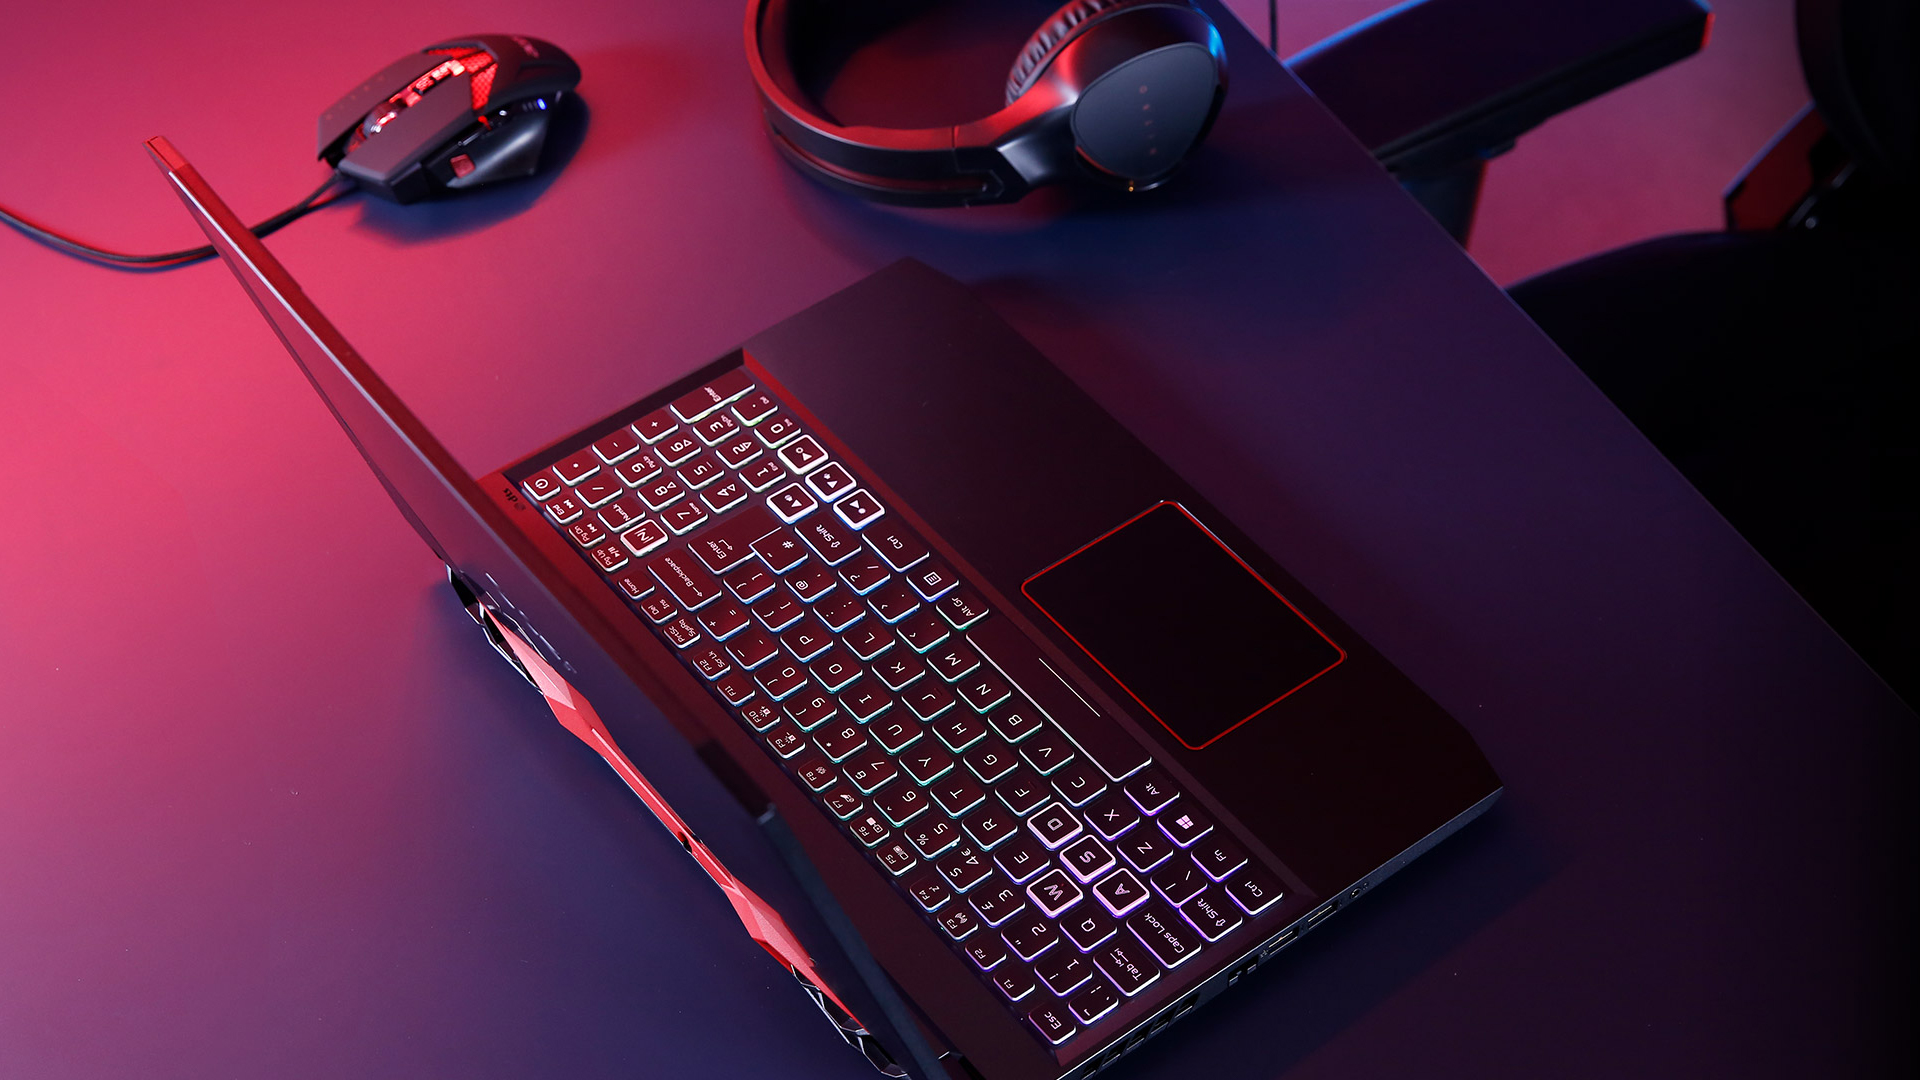 Đánh giá Acer Nitro 5 (AN515-55) với dòng Comet Lake-H đã được công bố và chứng minh rằng đây là một lựa chọn tuyệt vời cho người dùng laptop gaming. Hãy xem ngay hình ảnh để cảm nhận sự bền bỉ và mạnh mẽ của sản phẩm.